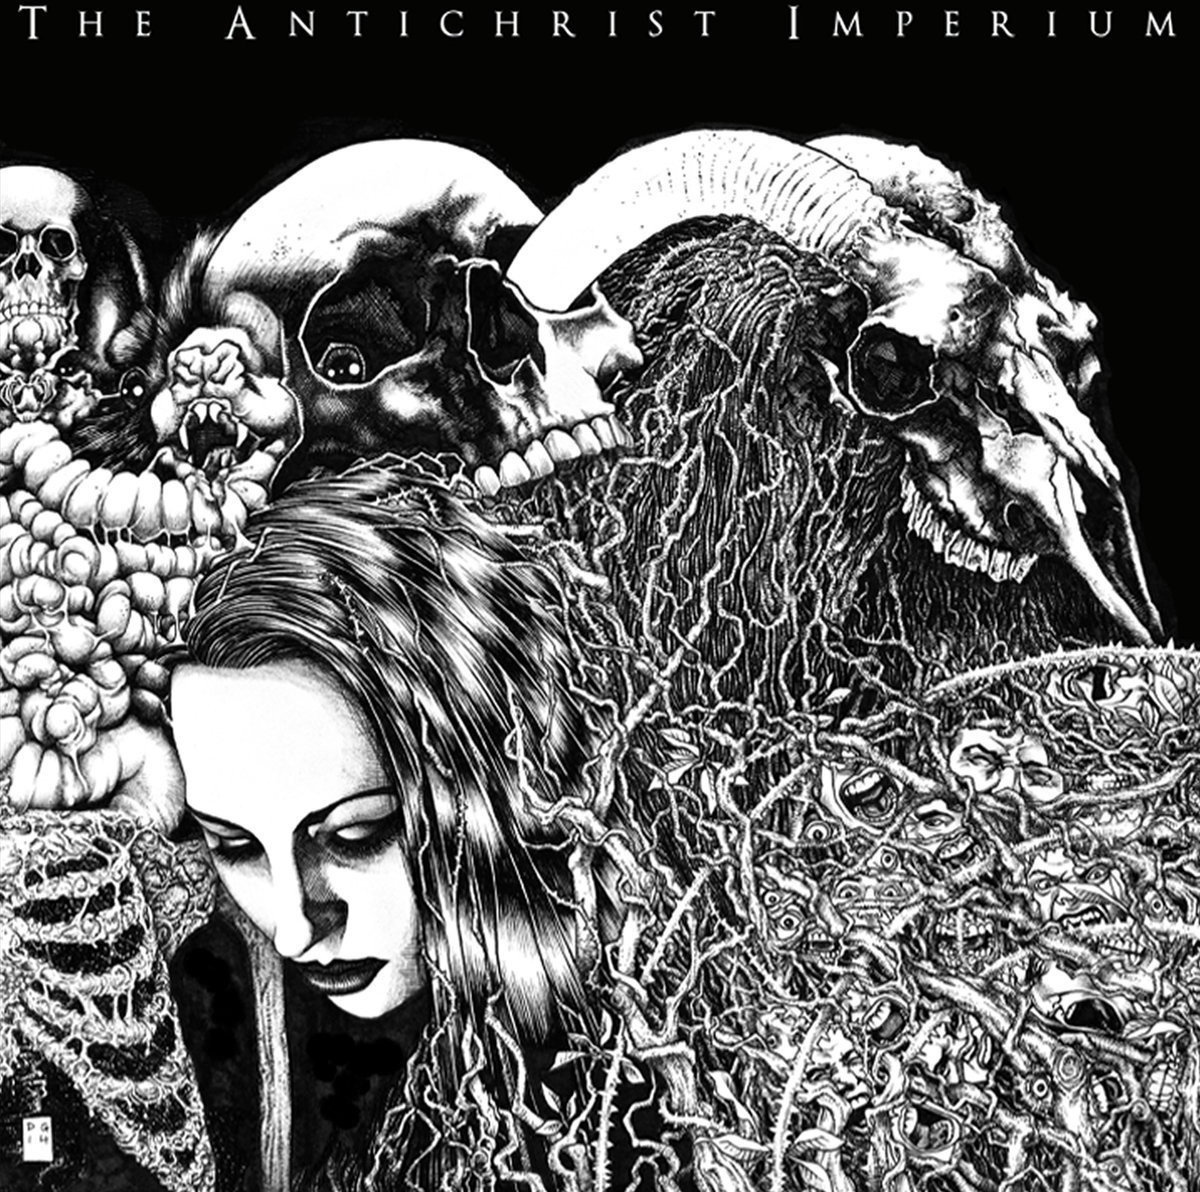 Disque vinyle The Antichrist Imperium - The Antichrist Imperium (LP)